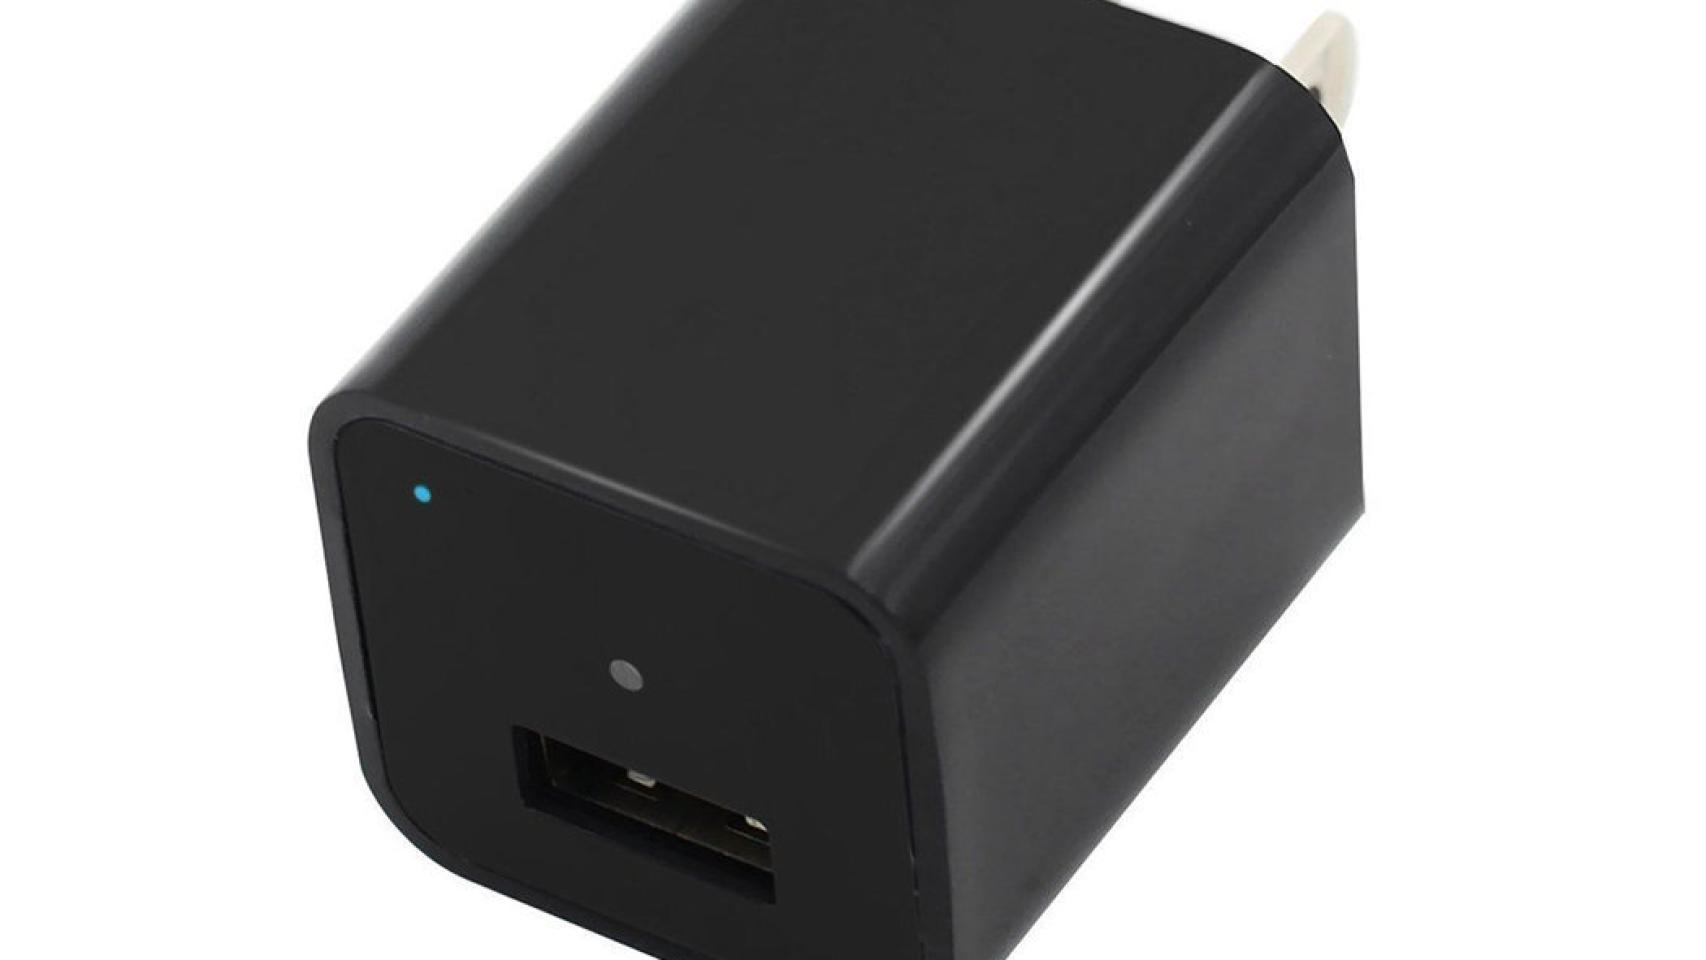 Usb Spy Cam Porn - Ese cargador USB que has dejado conectado te puede estar grabando